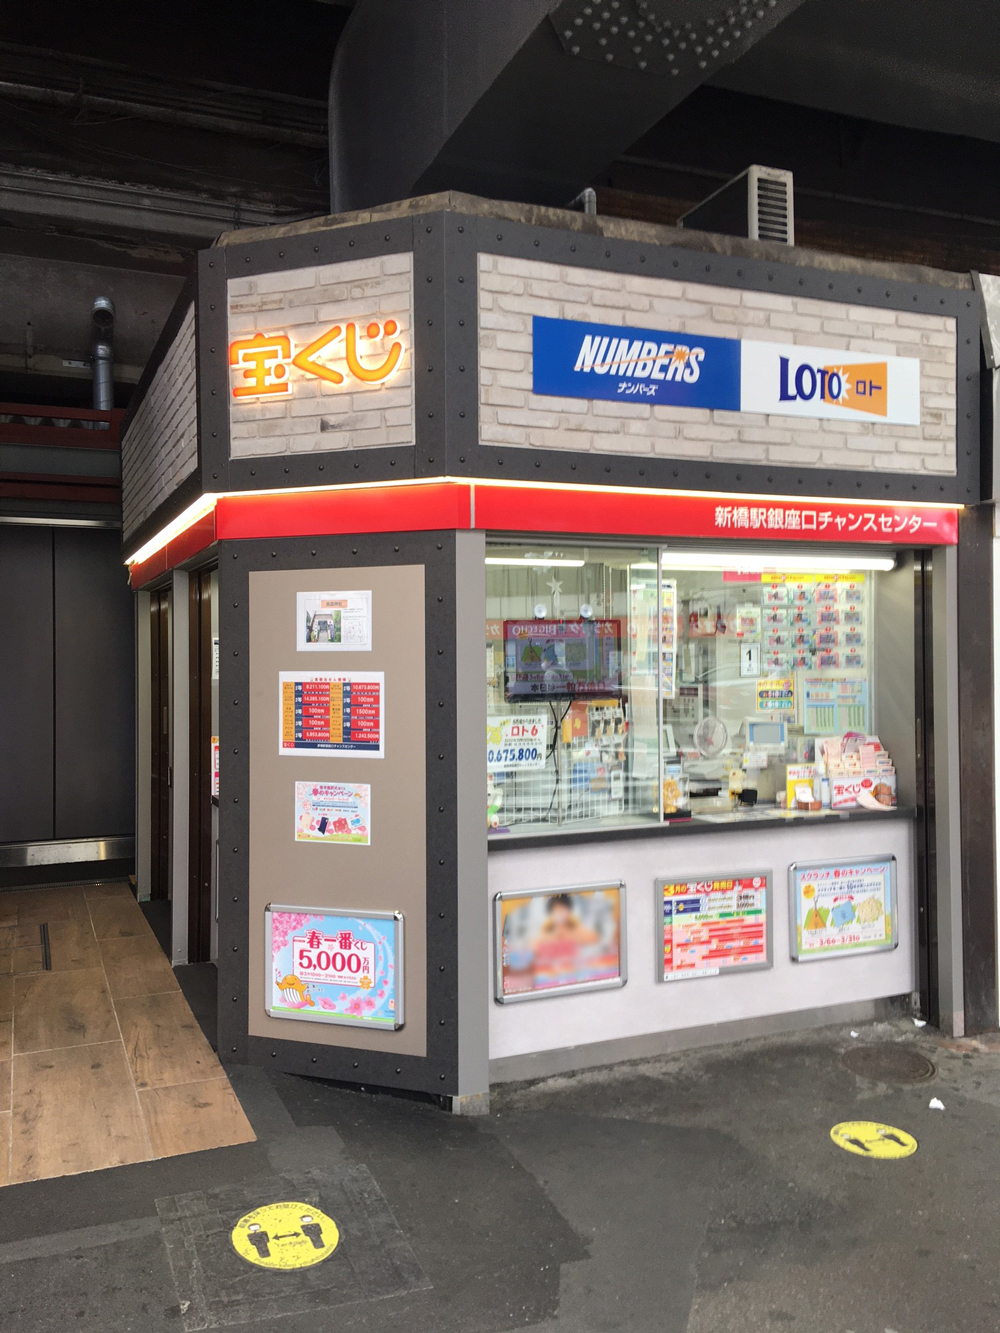 高額当選がたくさん出ている宝くじ売り場は、新橋駅銀座口チャンスセンター